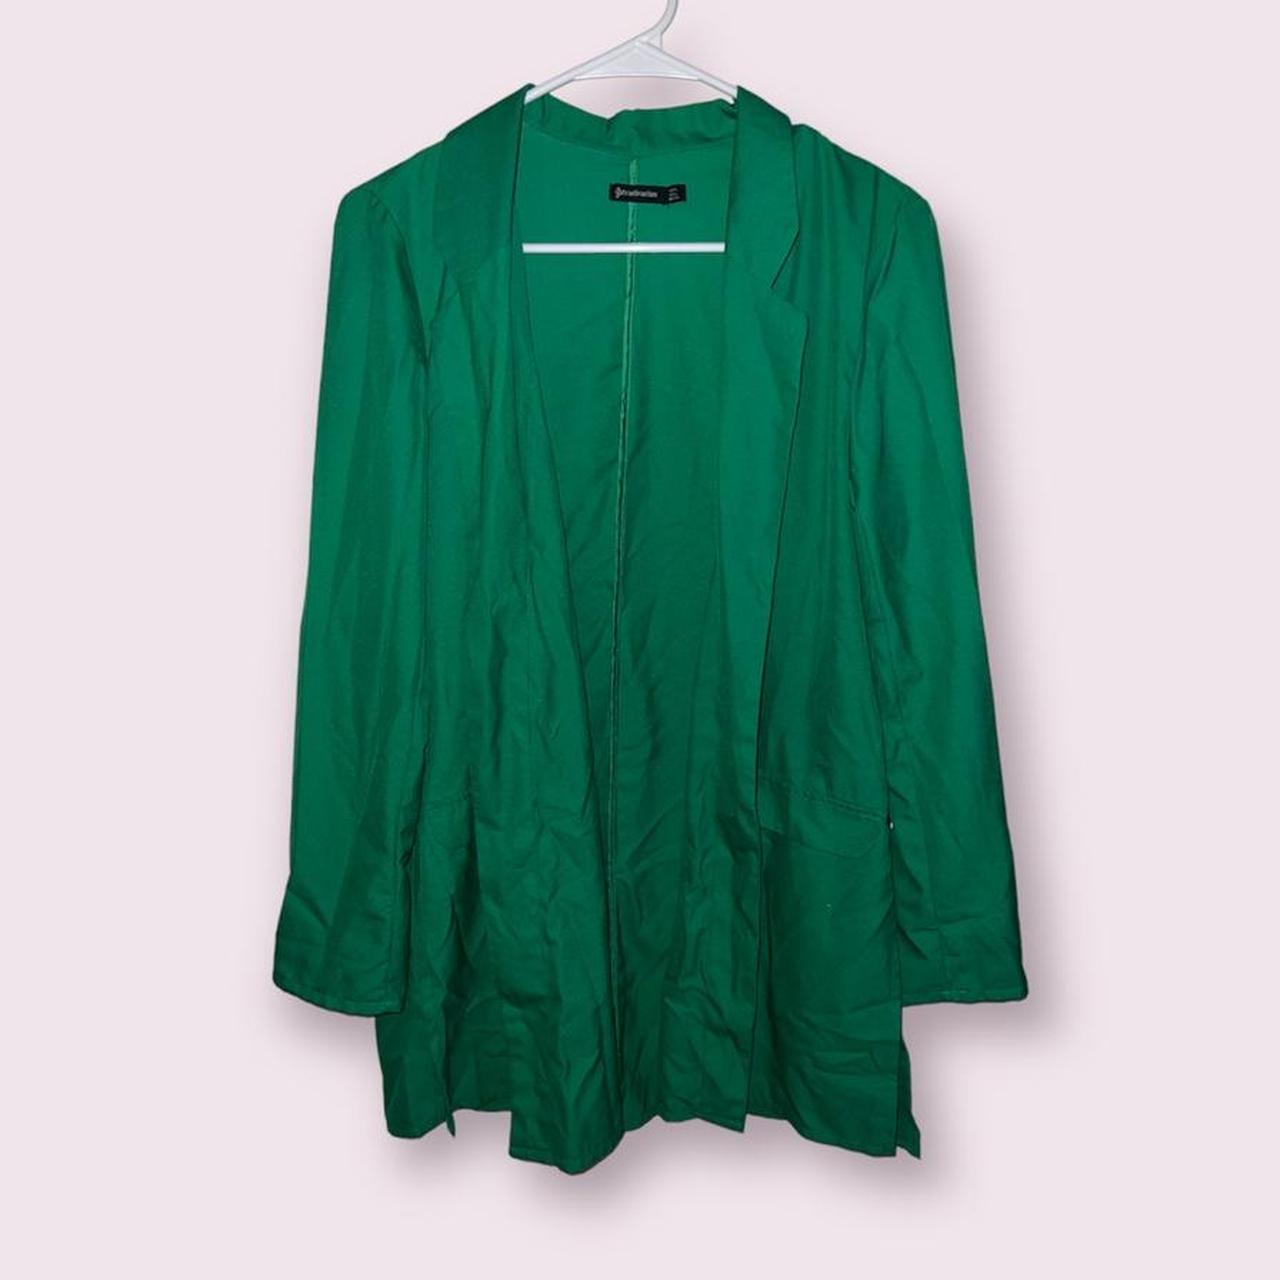 Stradivarius Women's Green Shirt